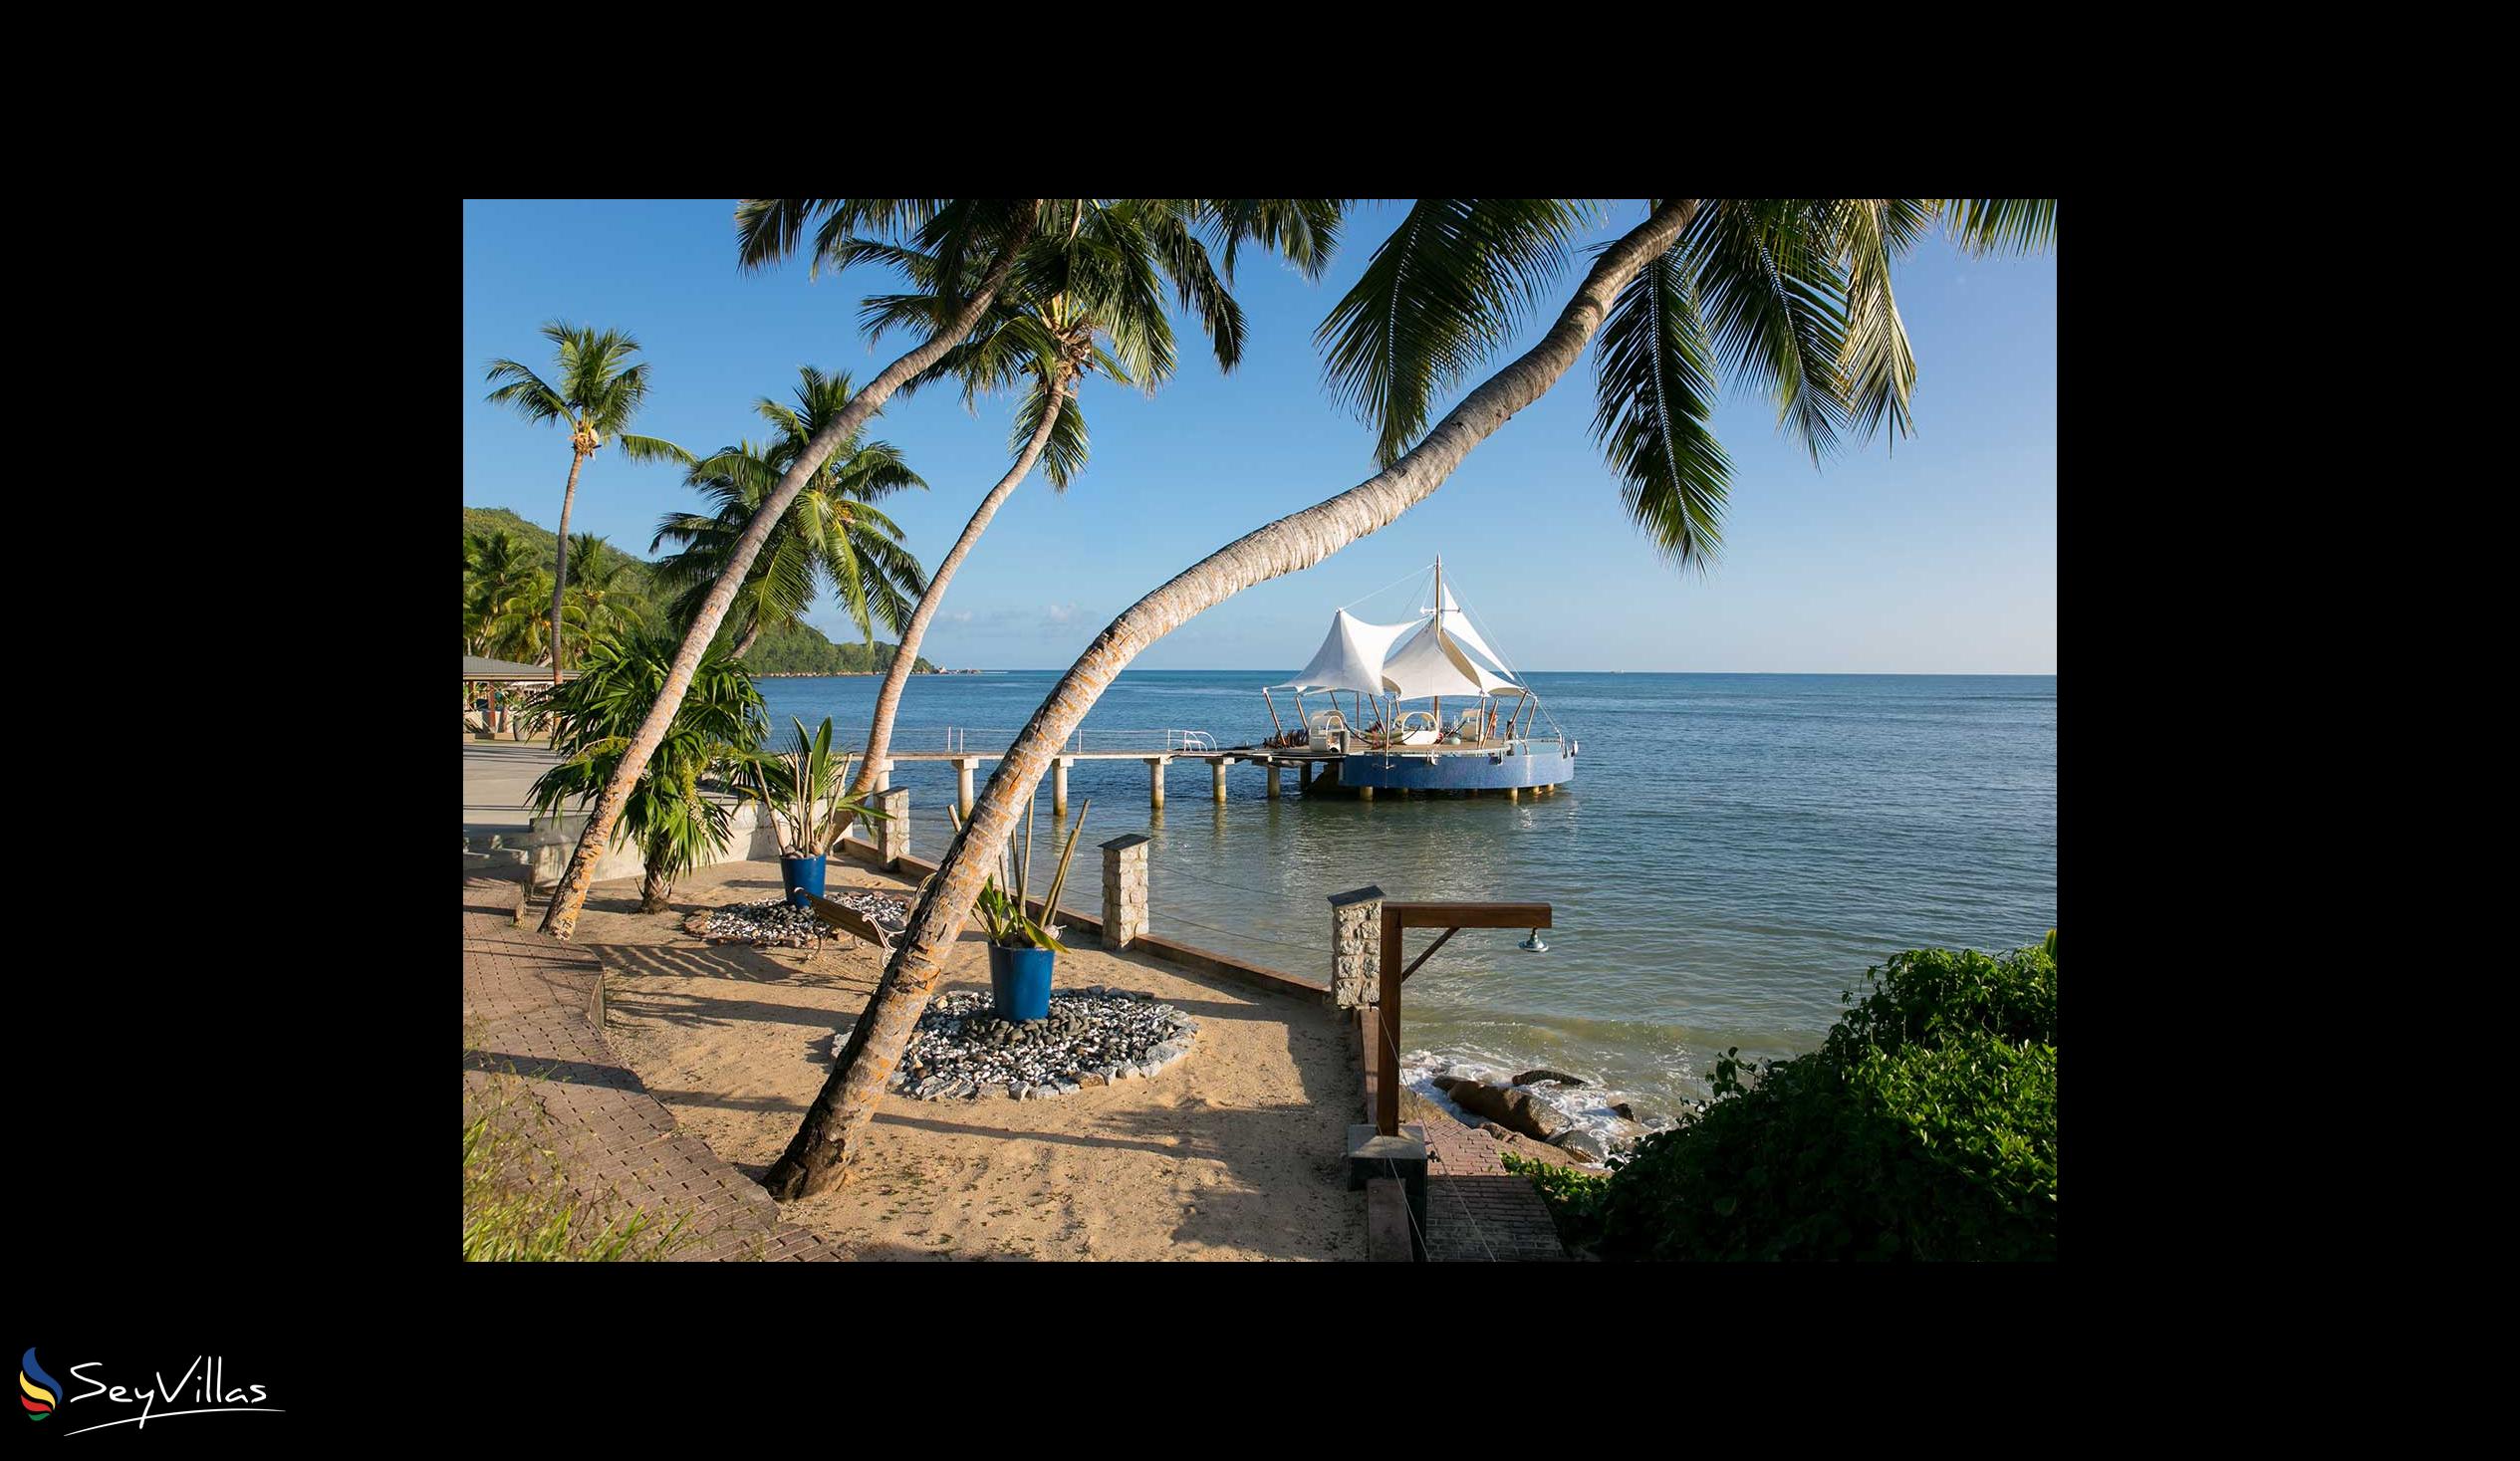 Foto 3: Coco de Mer & Black Parrot Suites - Aussenbereich - Praslin (Seychellen)